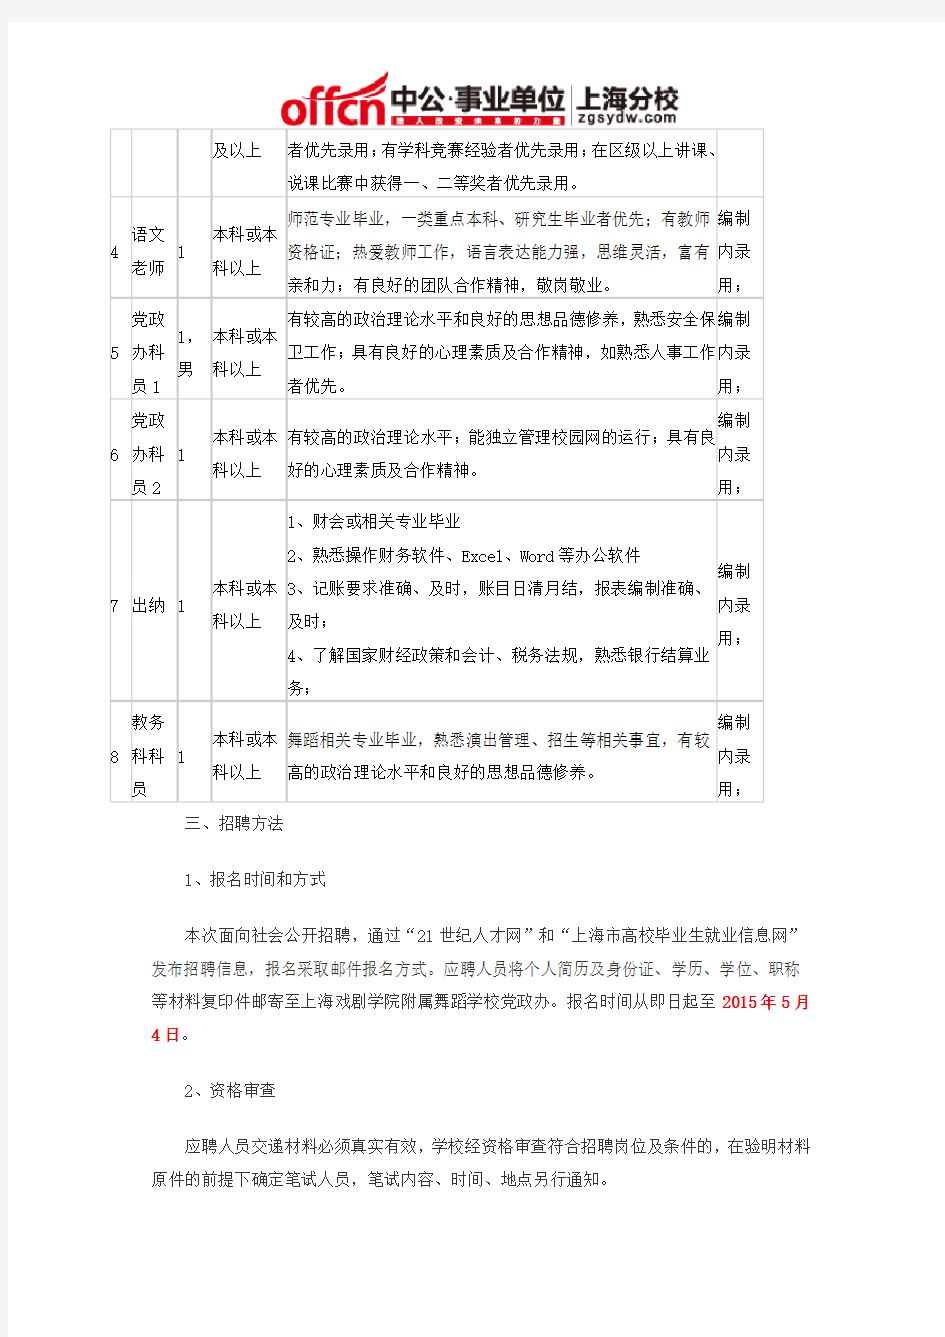 2015上海事业单位招聘考试：上海戏剧学院附属舞蹈学校工作人员公开招聘公告 (2)